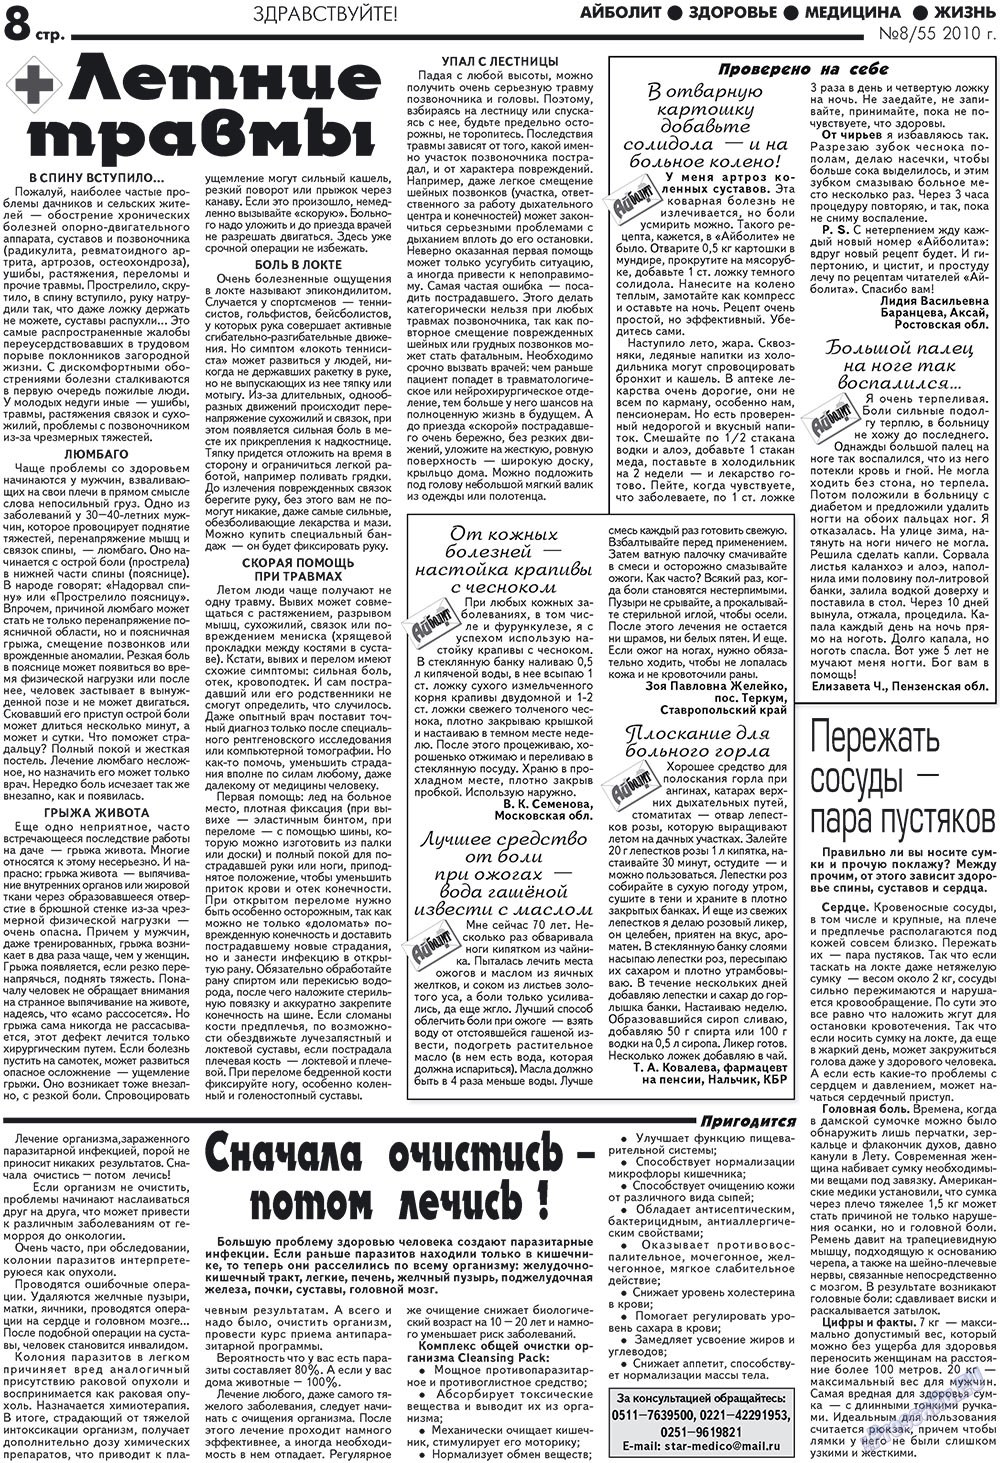 Aibolit (Zeitung). 2010 Jahr, Ausgabe 8, Seite 8